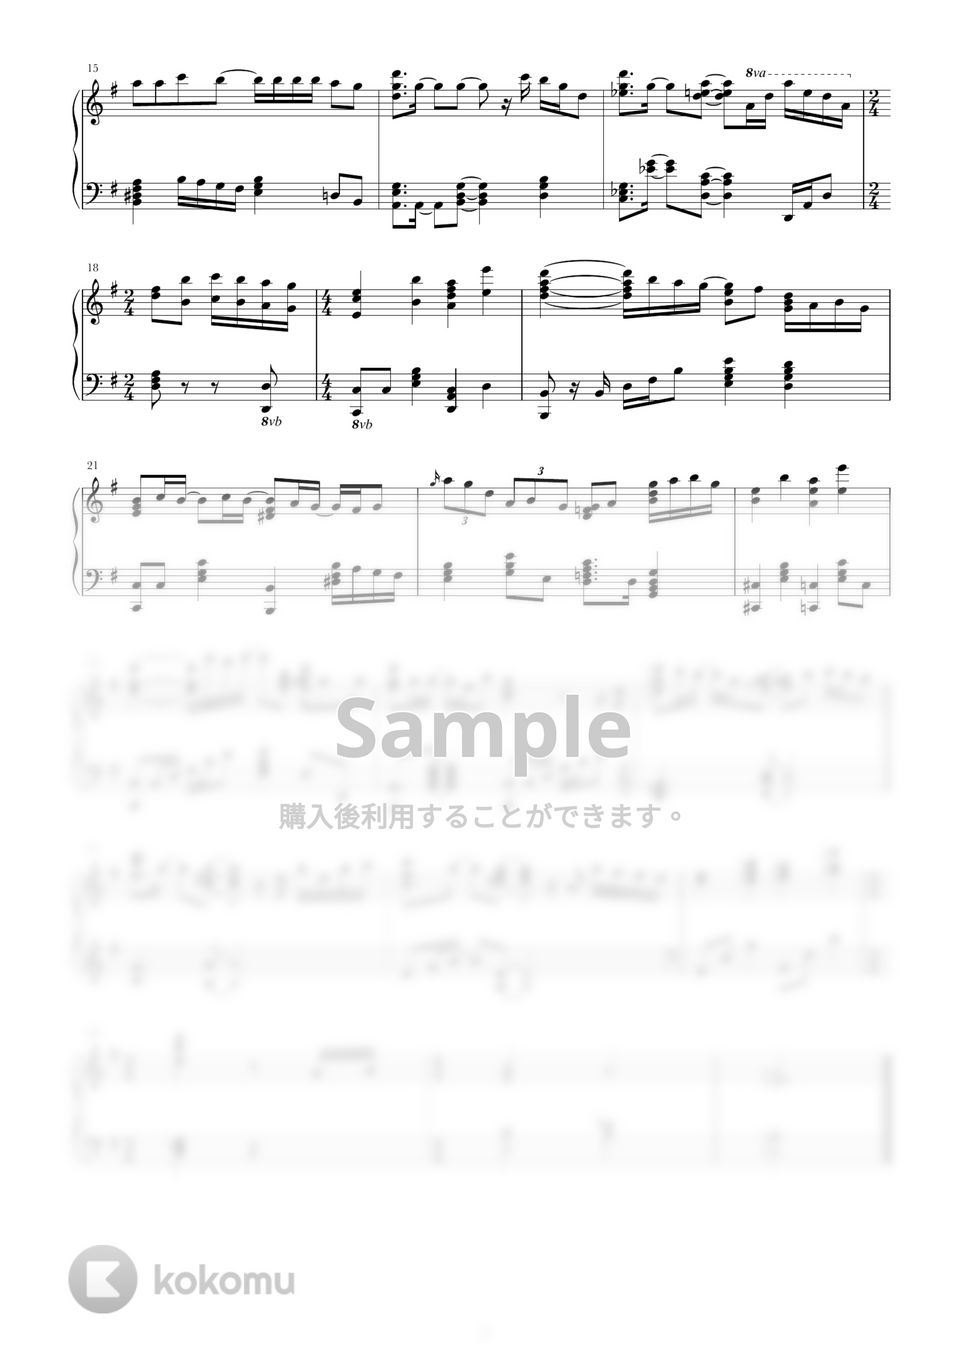 Lisa - シルシ (ピアノソロ、楽譜、移調) by harupi